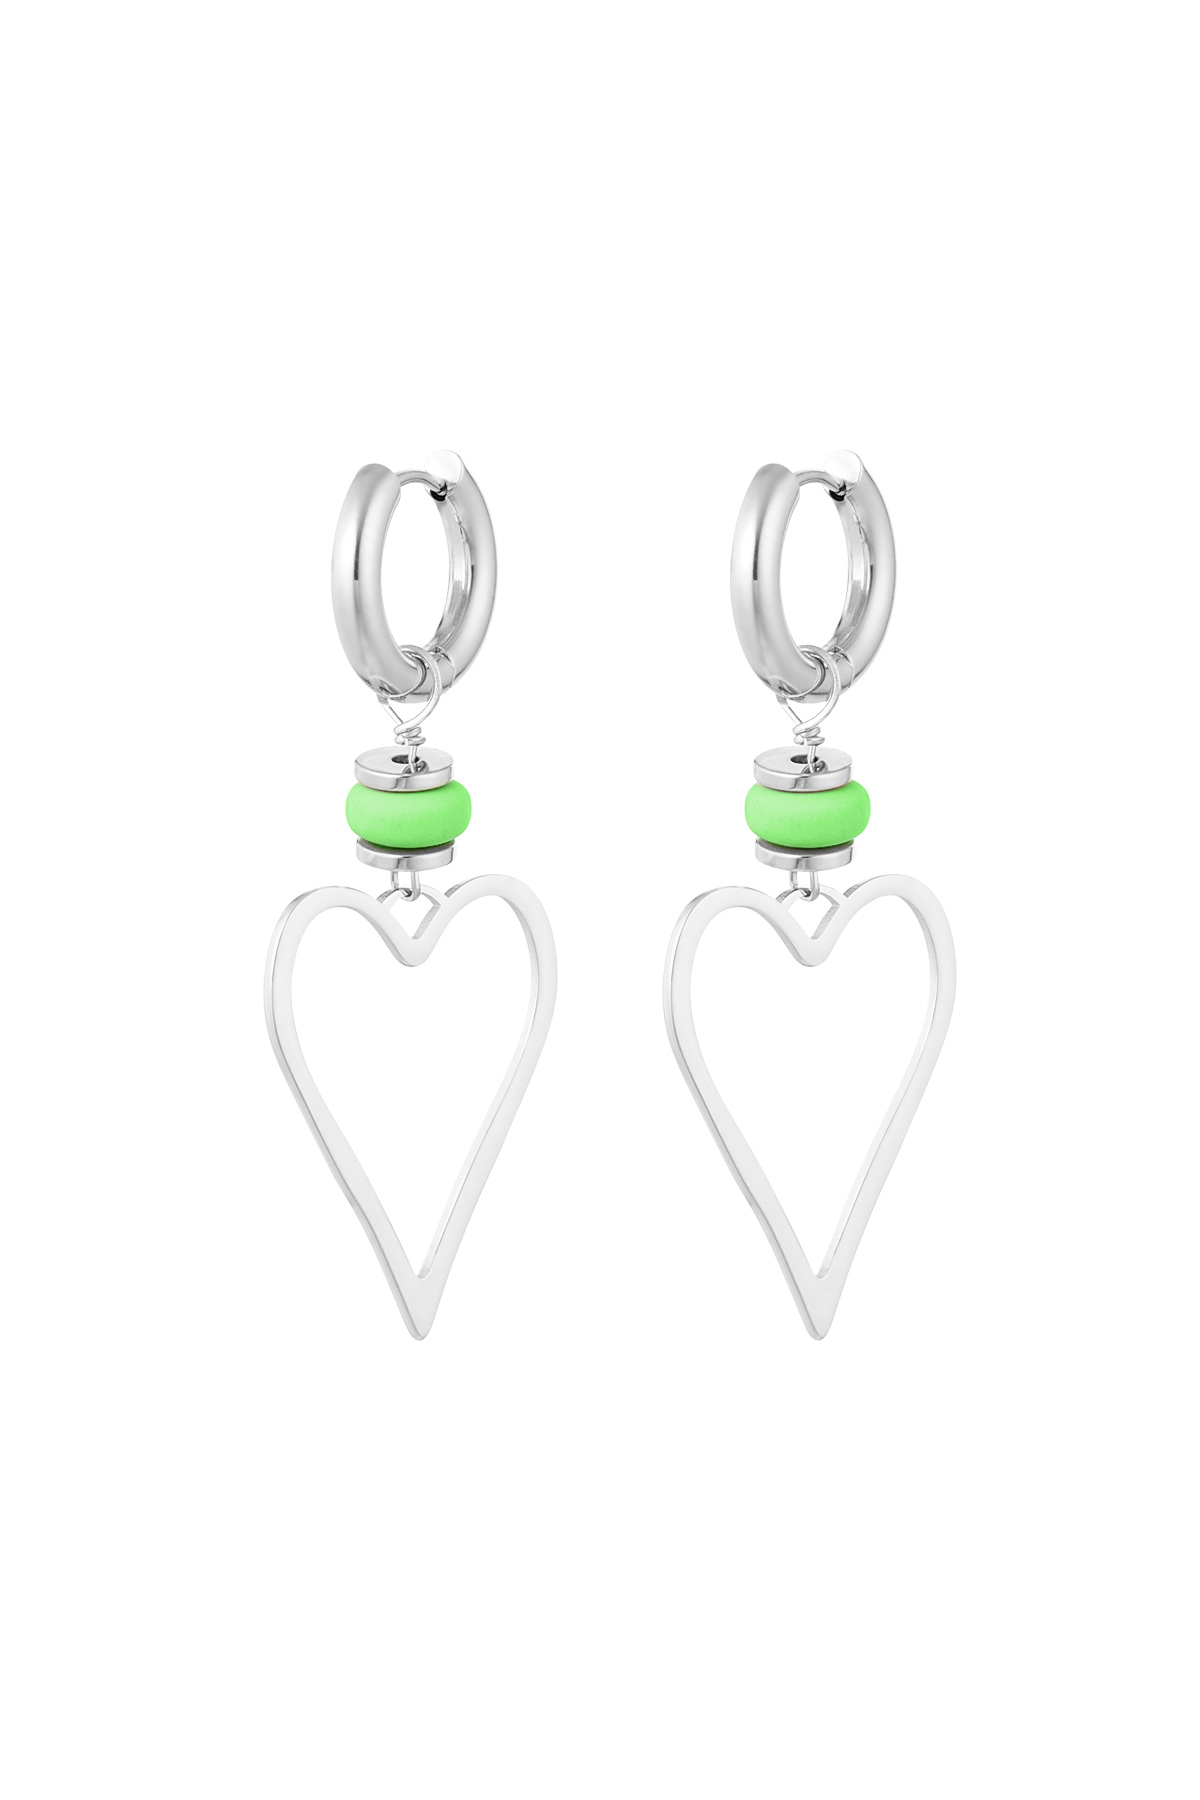 Ohrringe Herz mit Perle - Silber/Grün